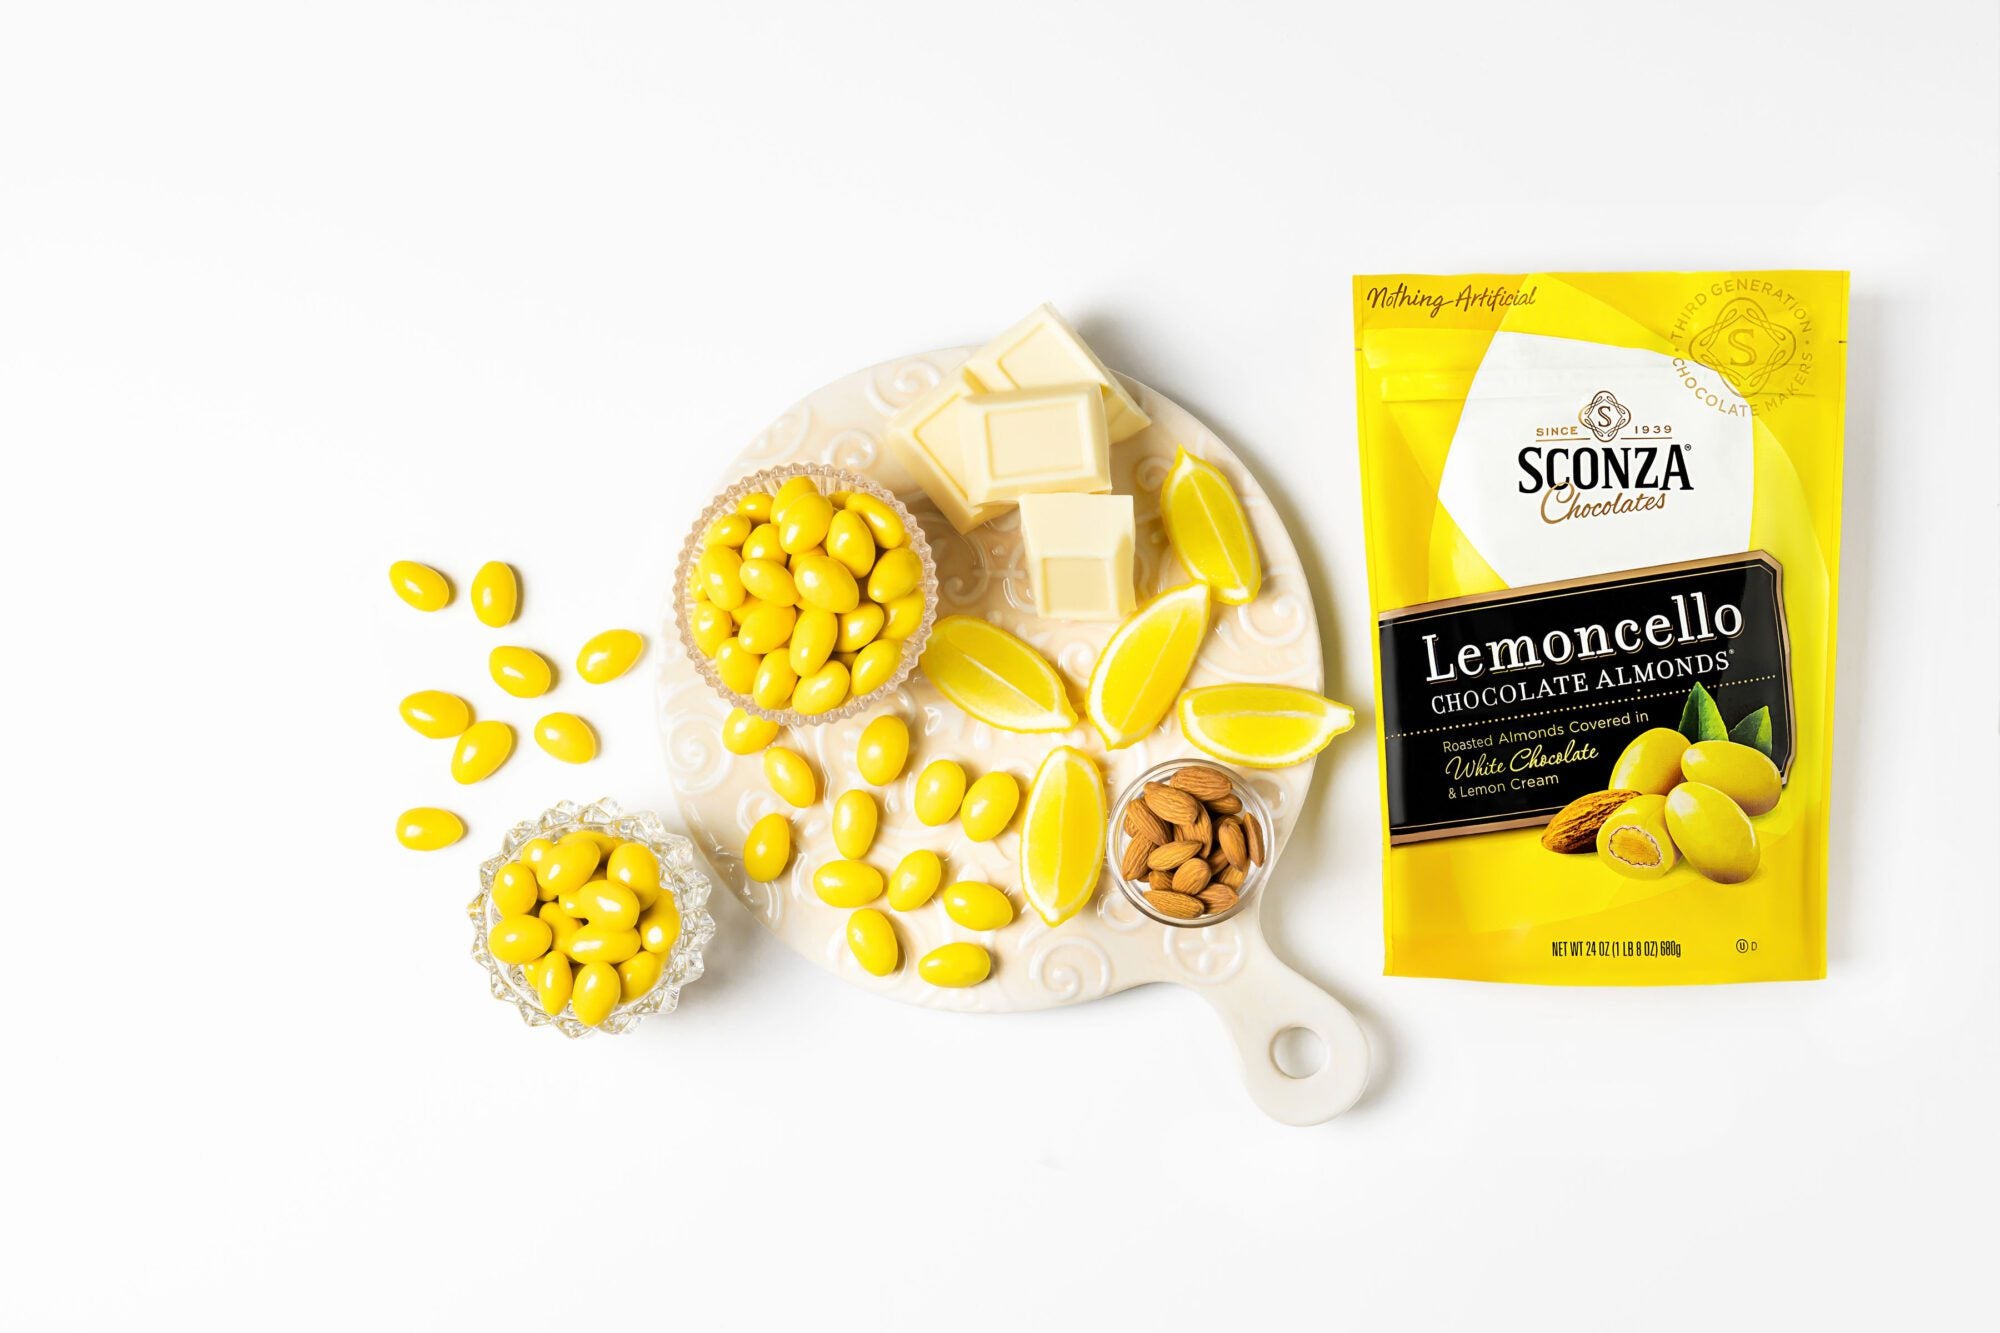 Sconza's Lemoncello for national lemonade day